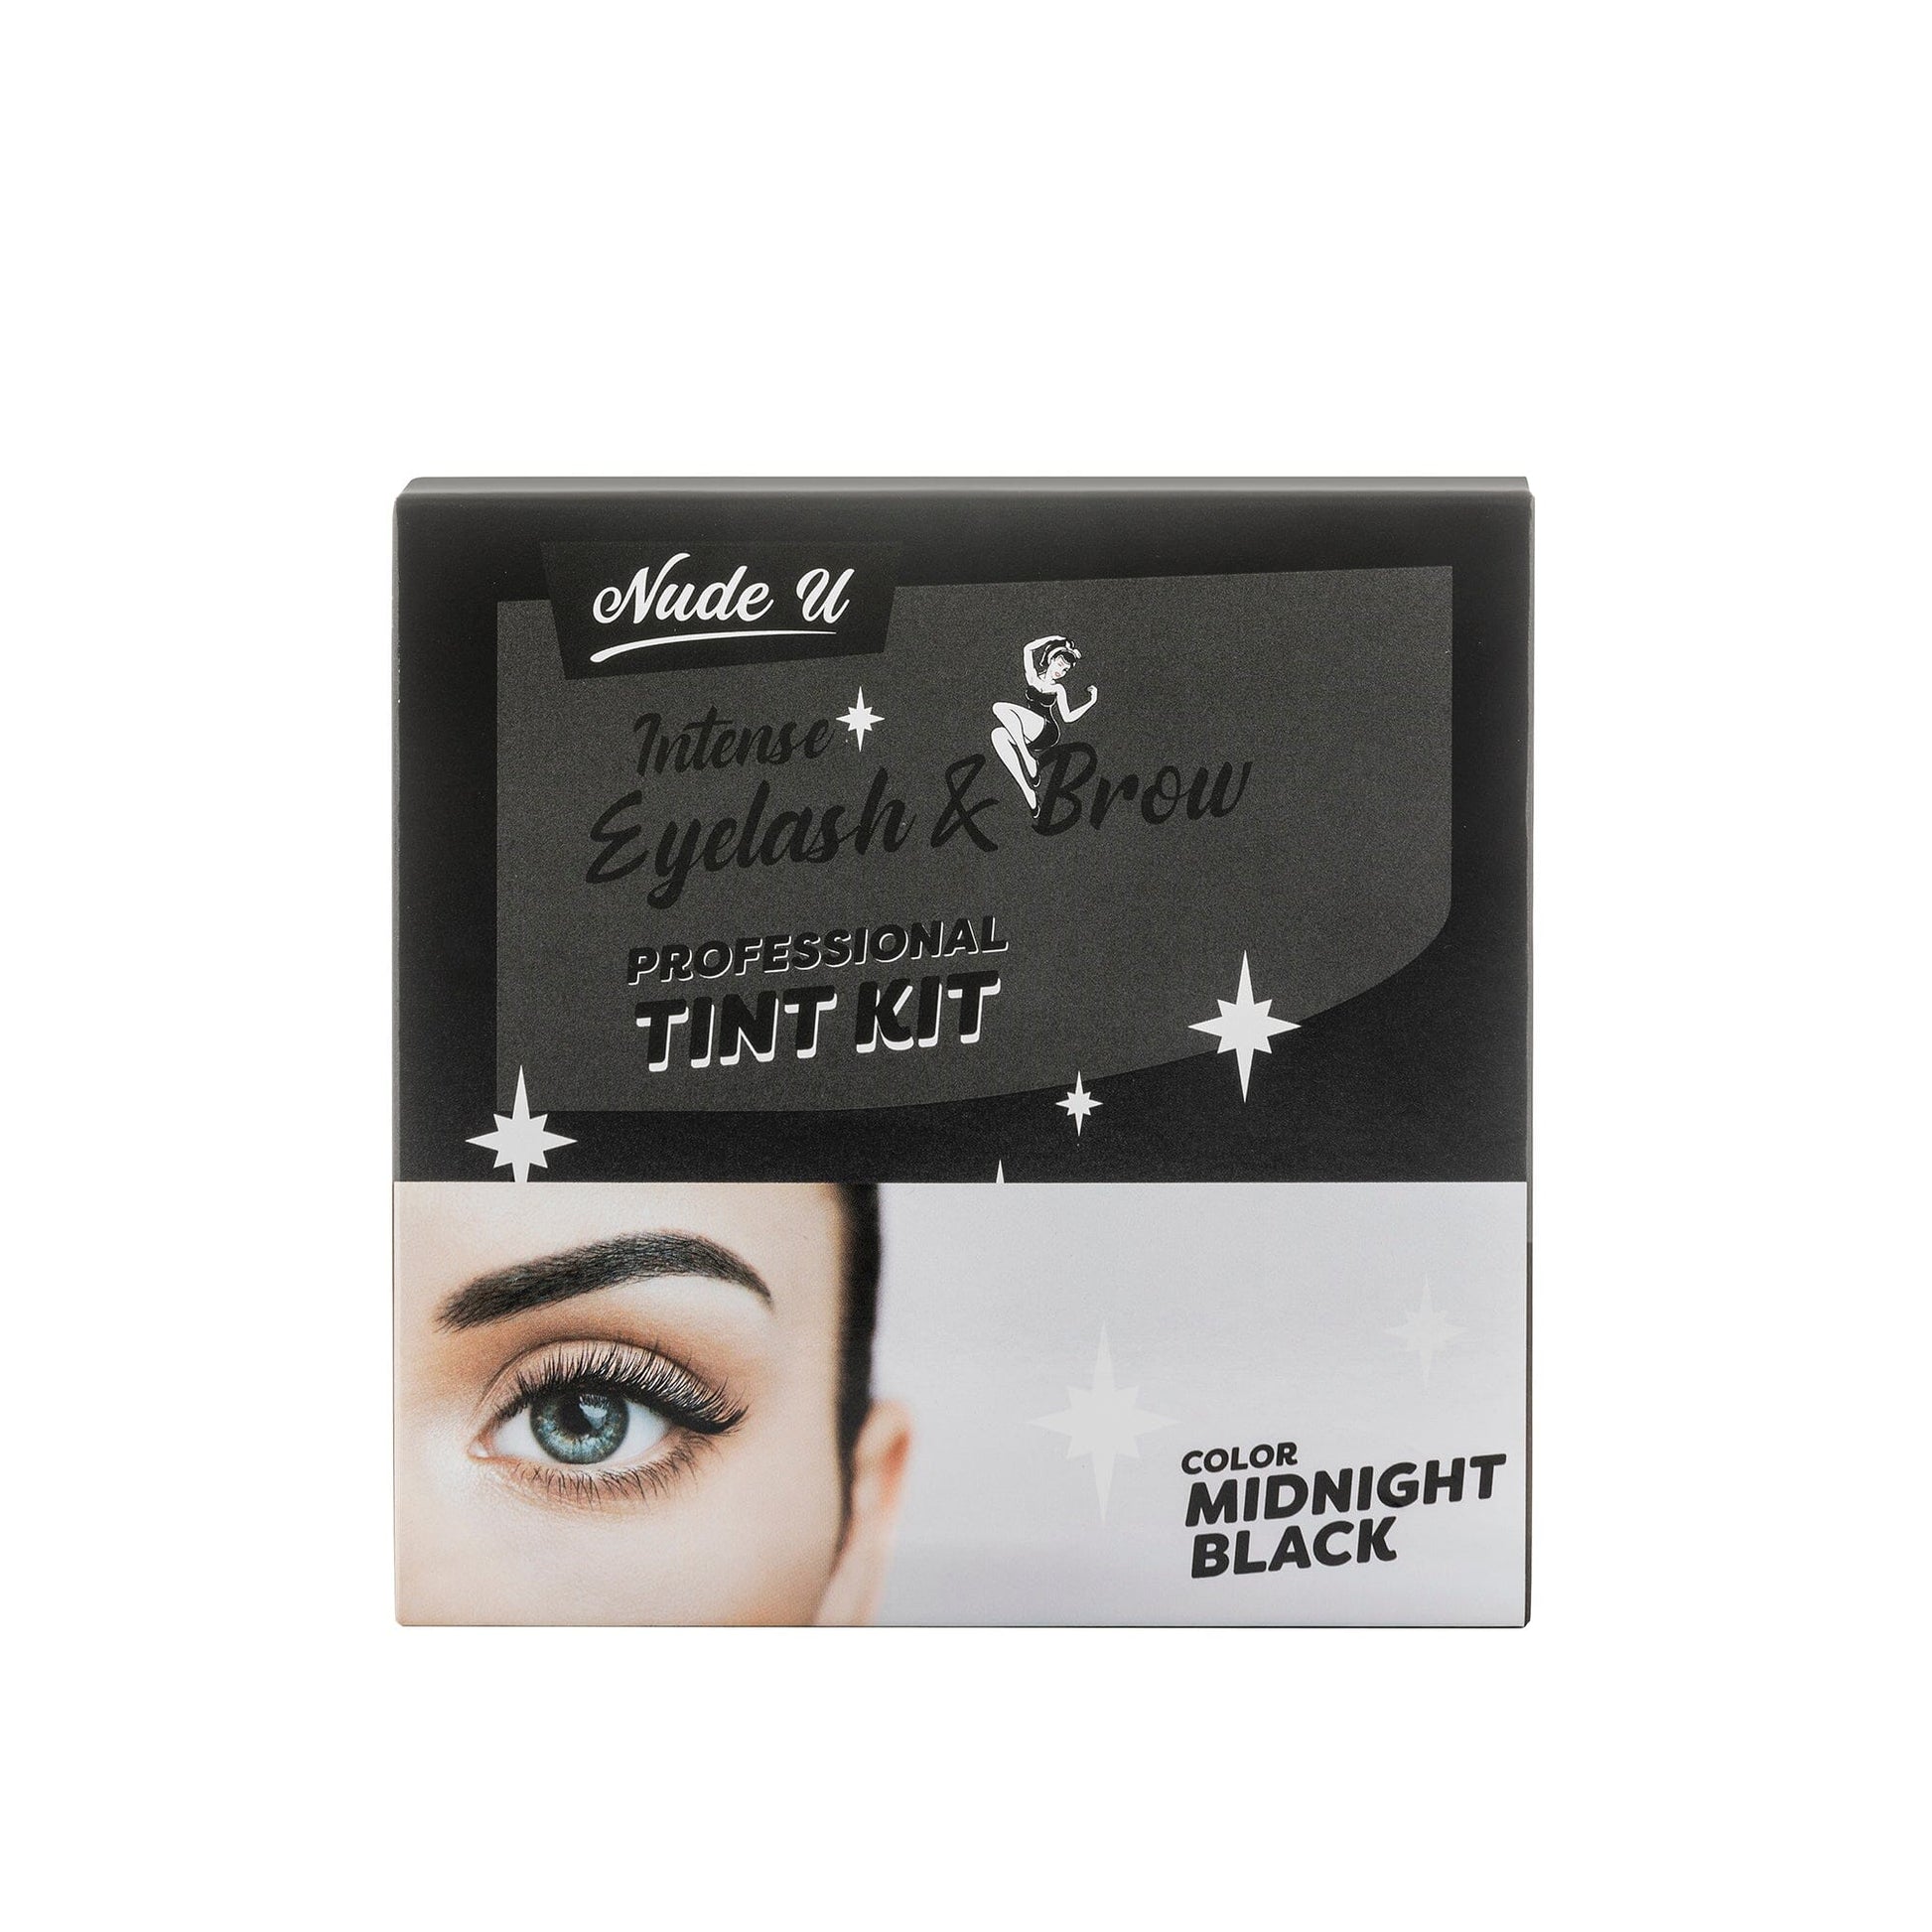 Intense Eyelash & Brow | Midnight Black | Professional Tint Kit | NUDE U Spas NUDE U 